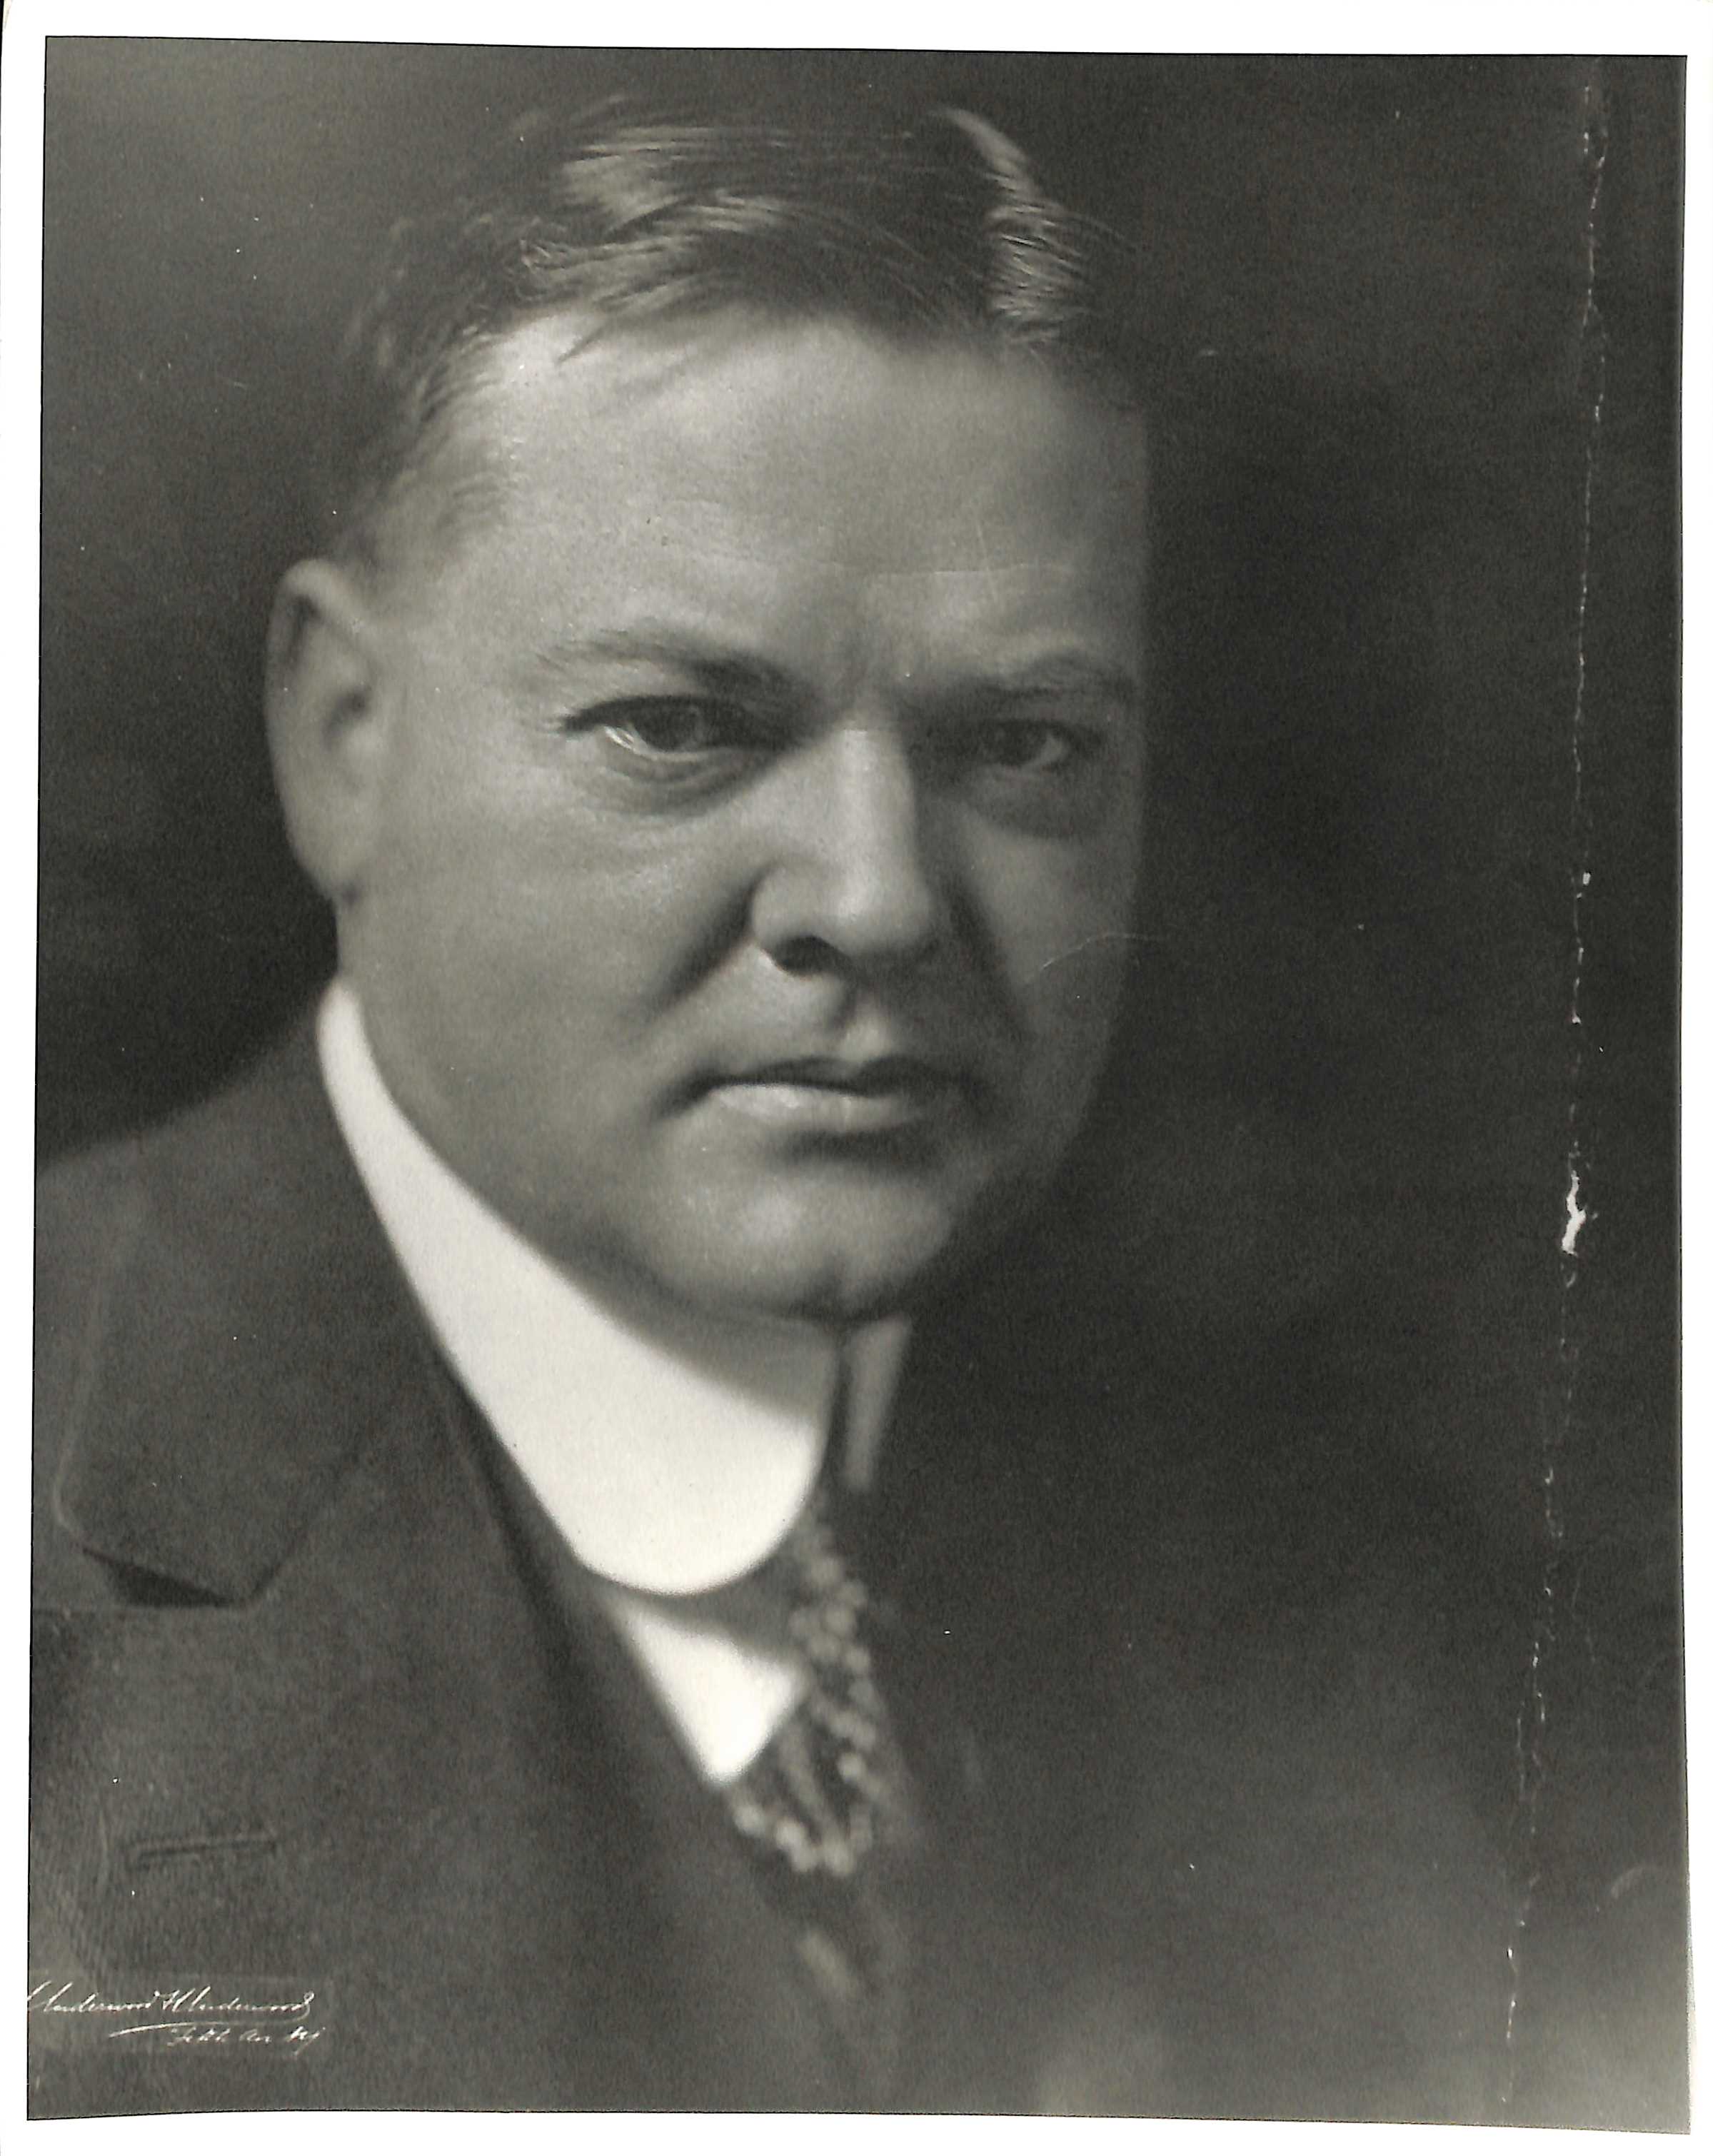 Herbert Hoover Pictures